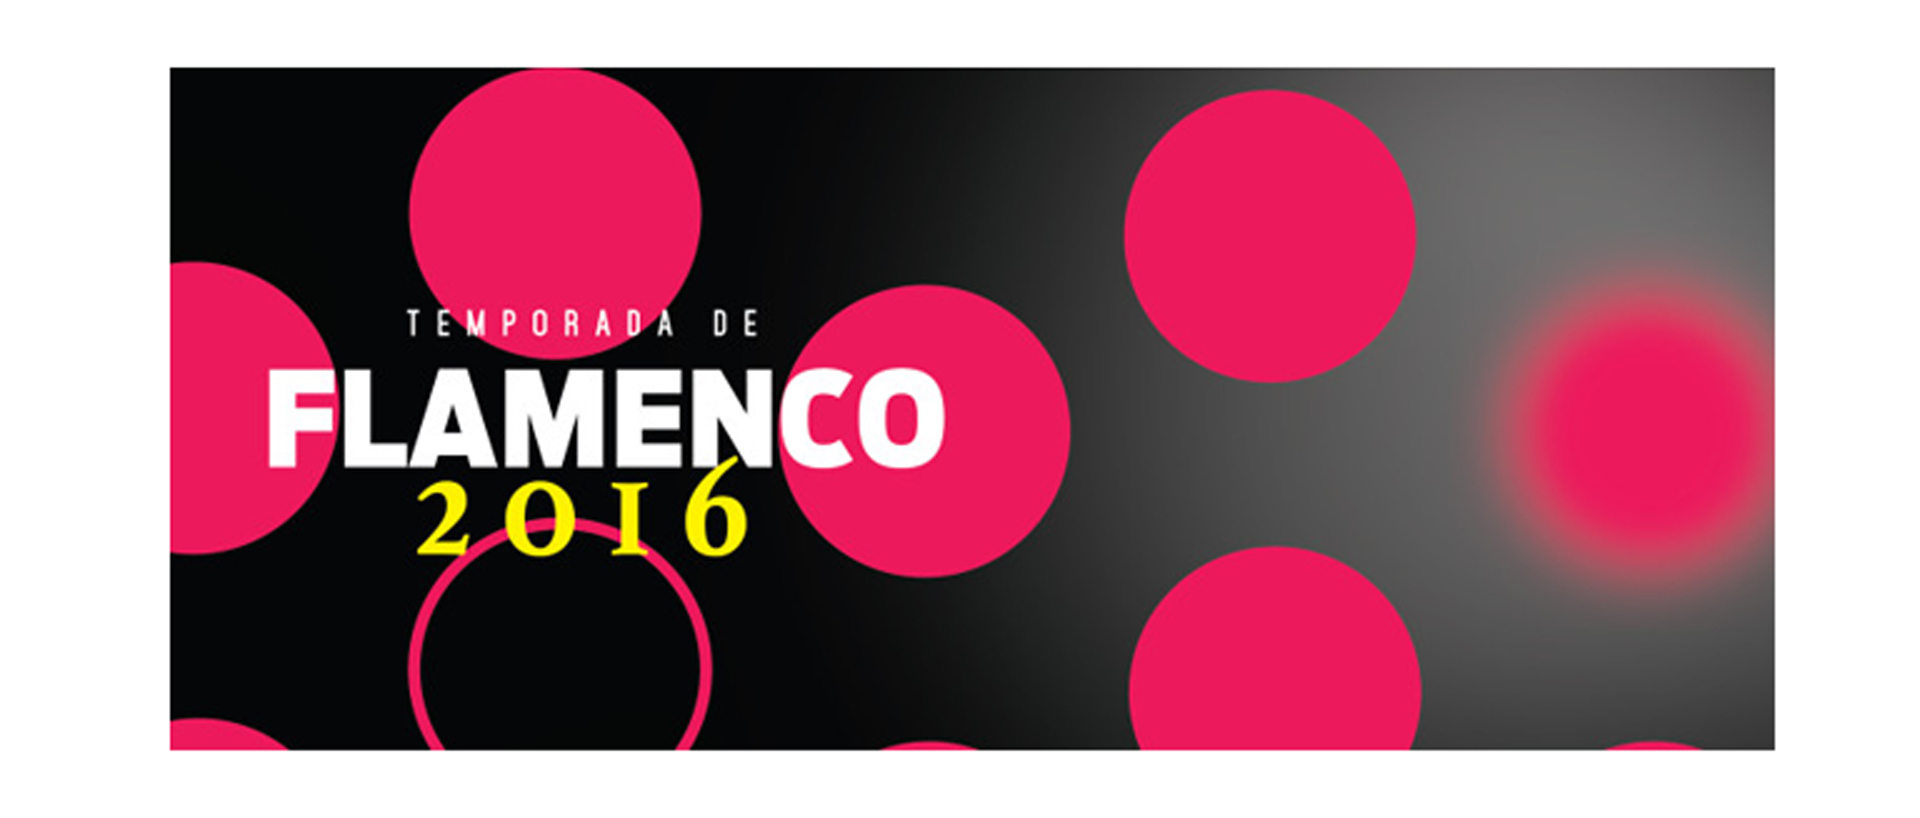 Con broche de oro cerrará este evento cultural de funciones flamencas